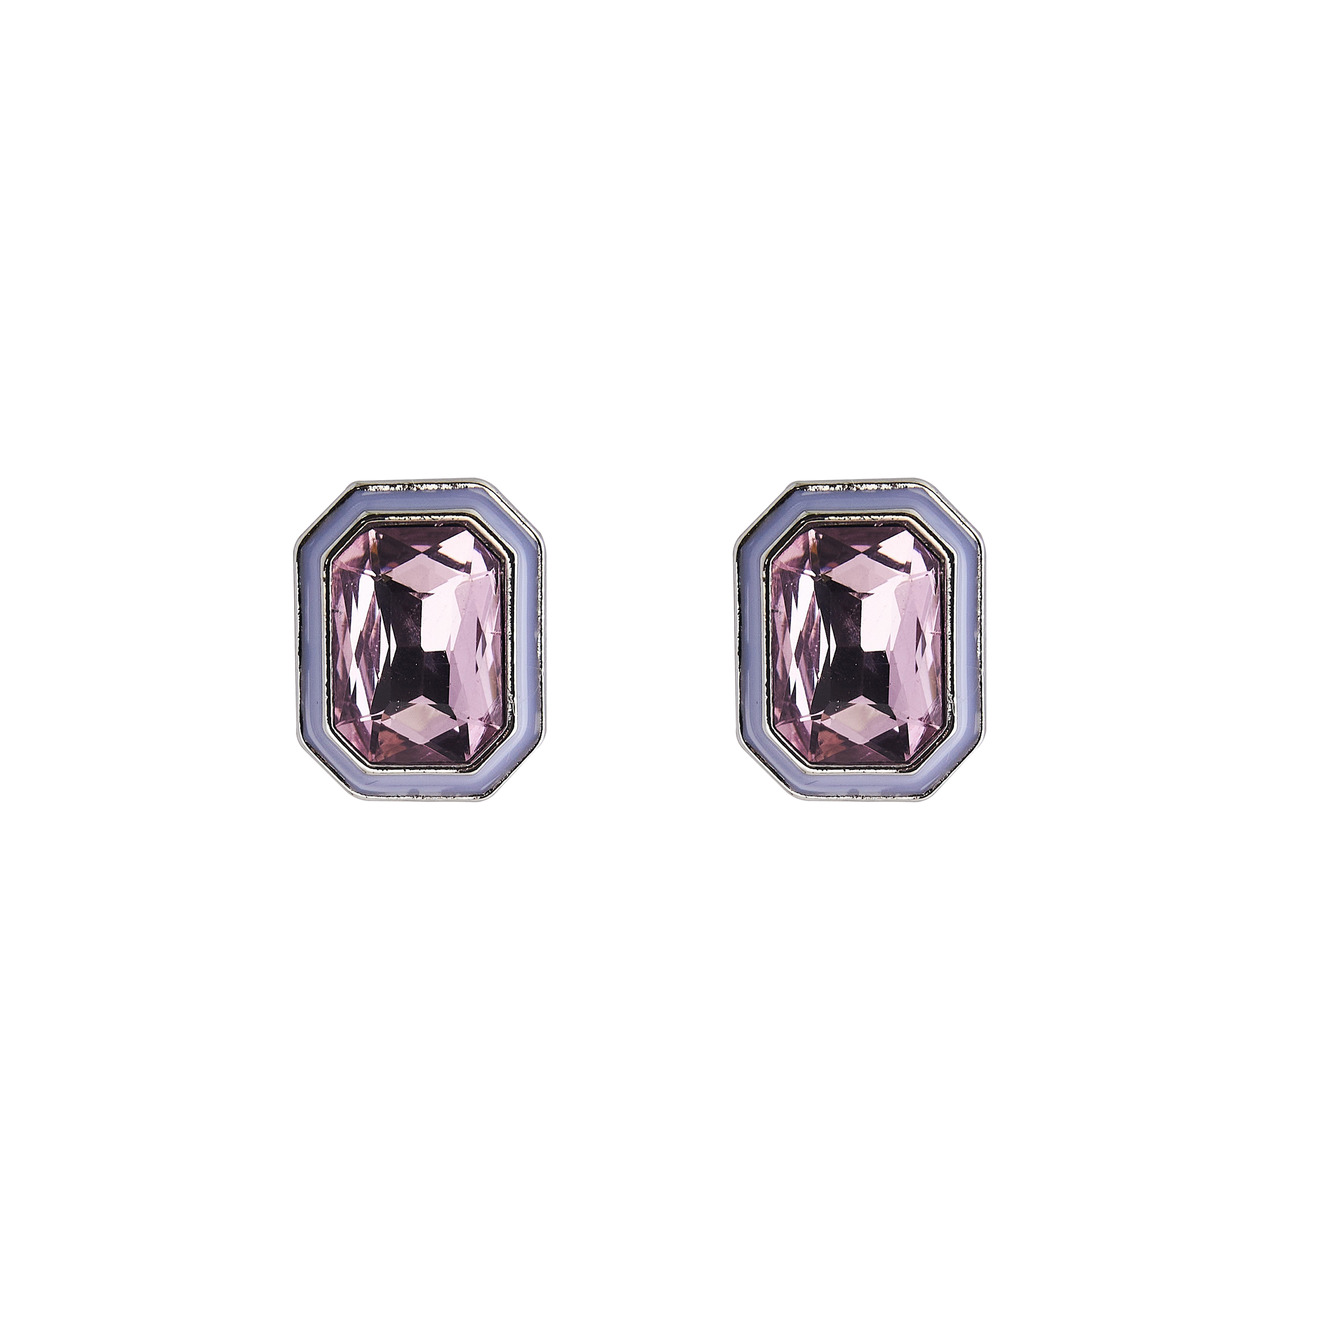 Herald Percy Серебристые серьги с розовыми кристаллами и белой эмалью